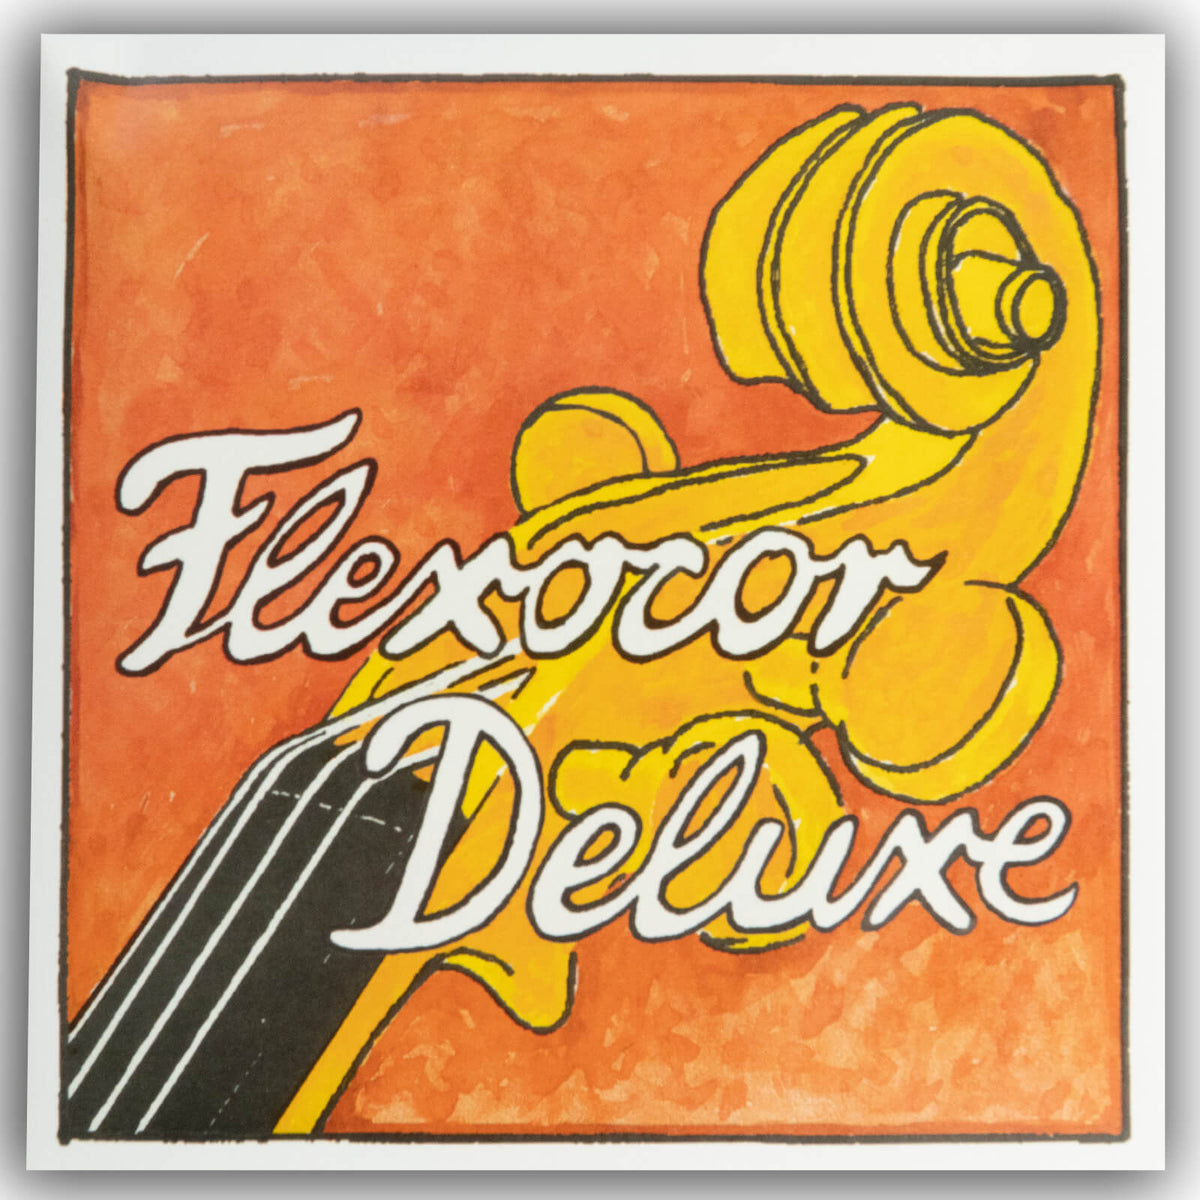 Pirastro Flexocore Deluxe Cello G String